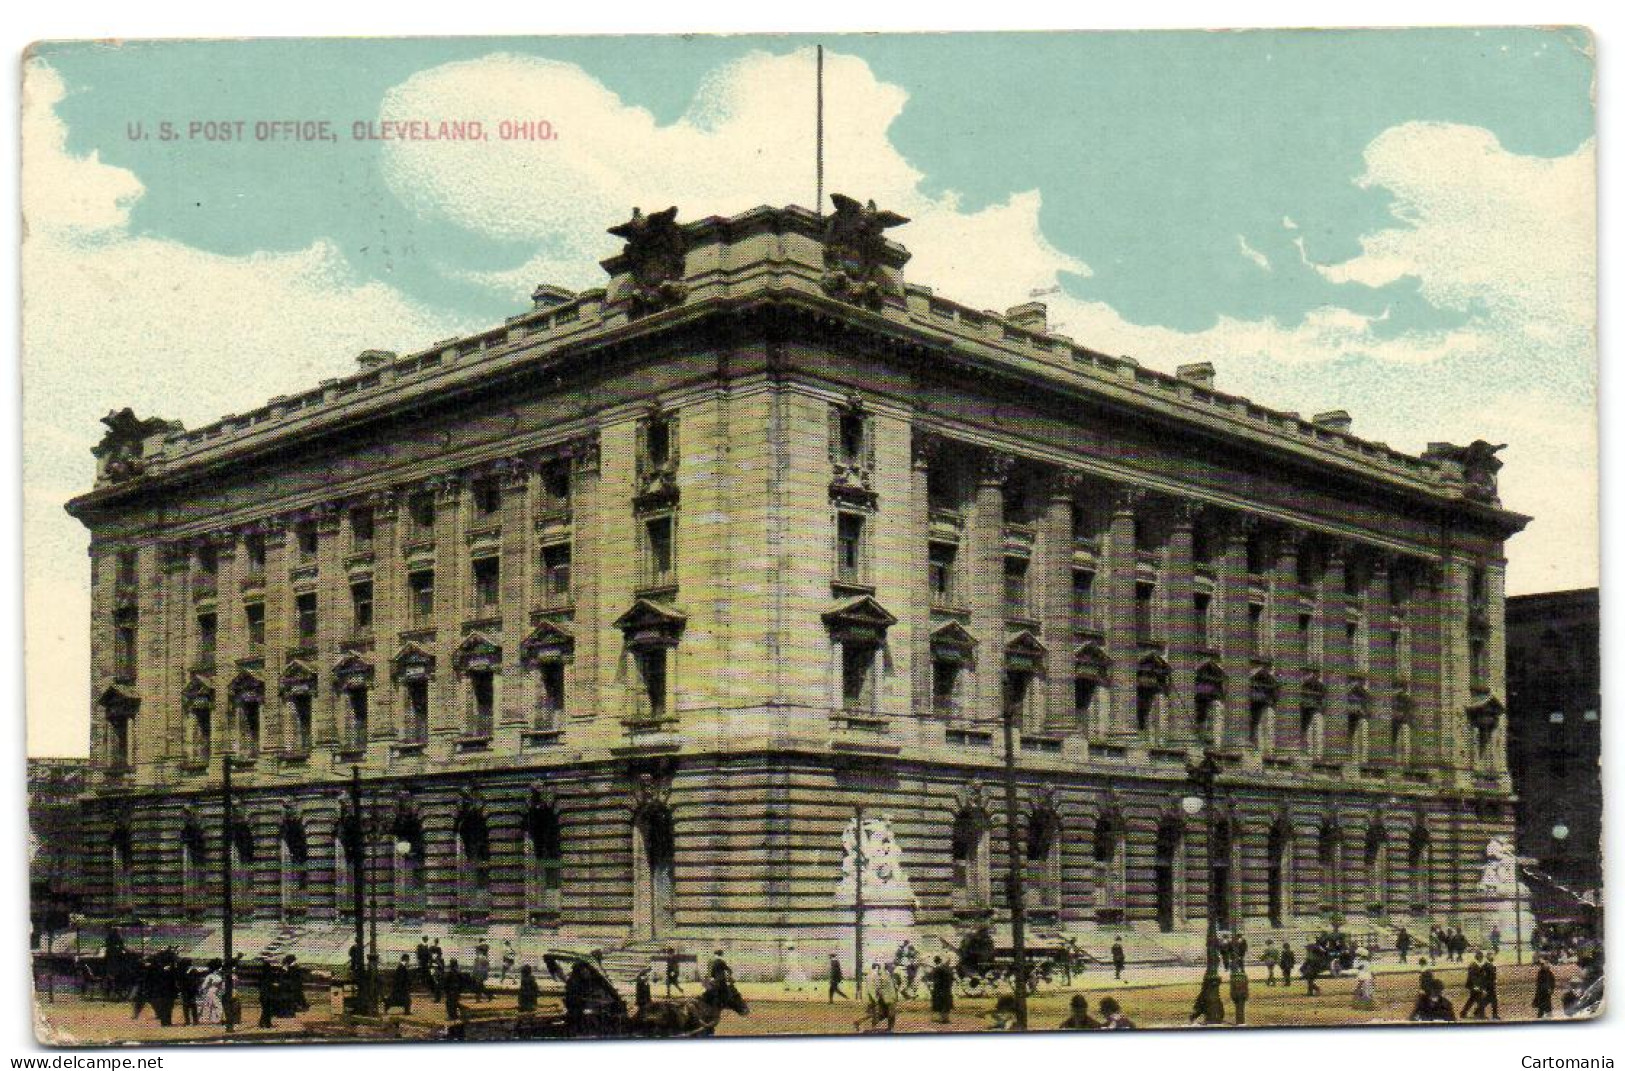 U.S. Post Office - Cleveland - Ohio - Cleveland